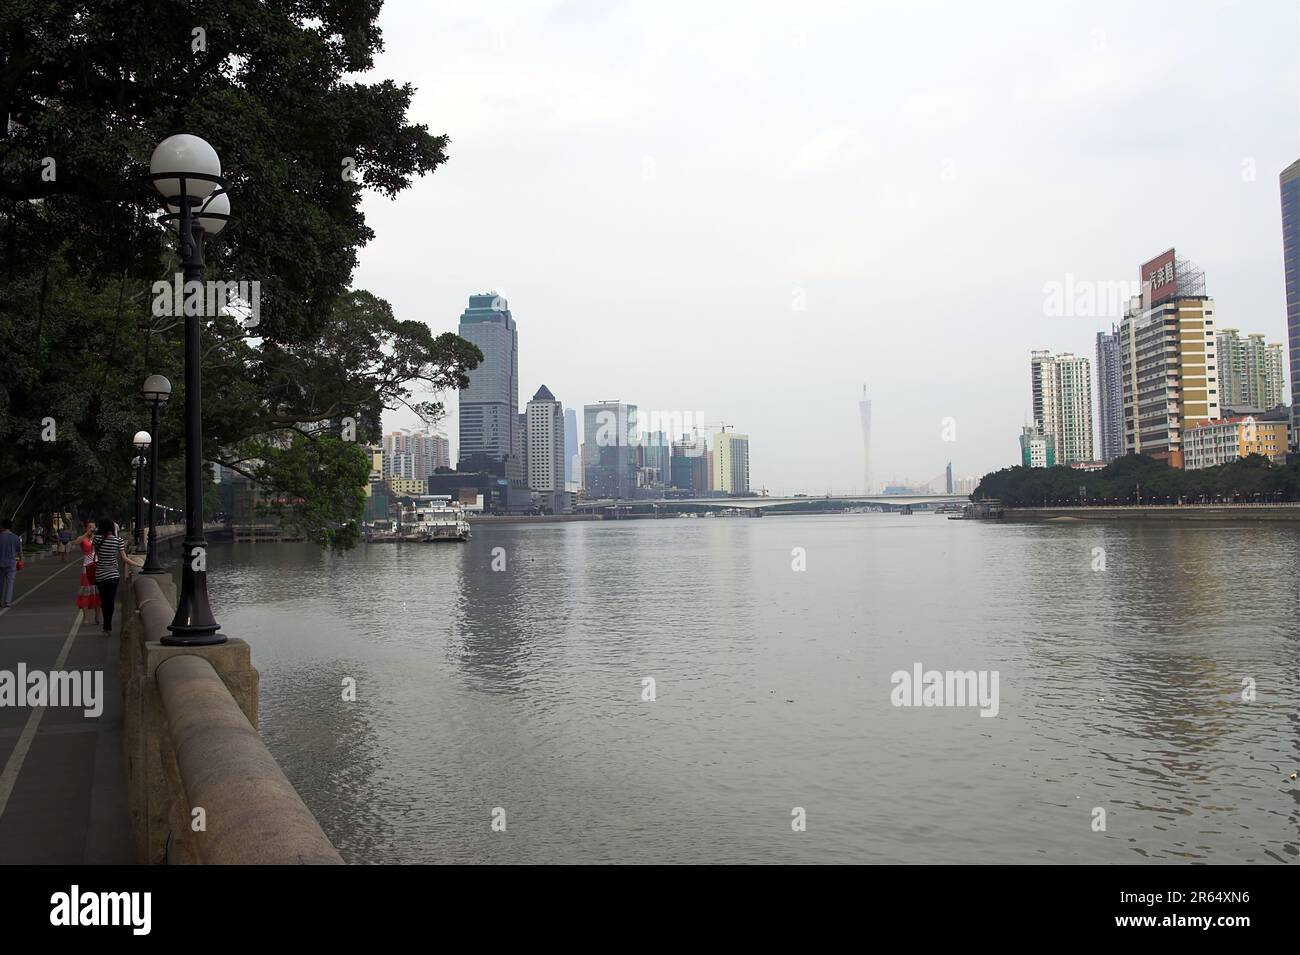 广州市 中國 Guangzhou, China; Skyscrapers on the banks of the Pearl River; Wolkenkratzer am Ufer des Perlflusses; Rascacielos a orillas del río Pearl Stock Photo